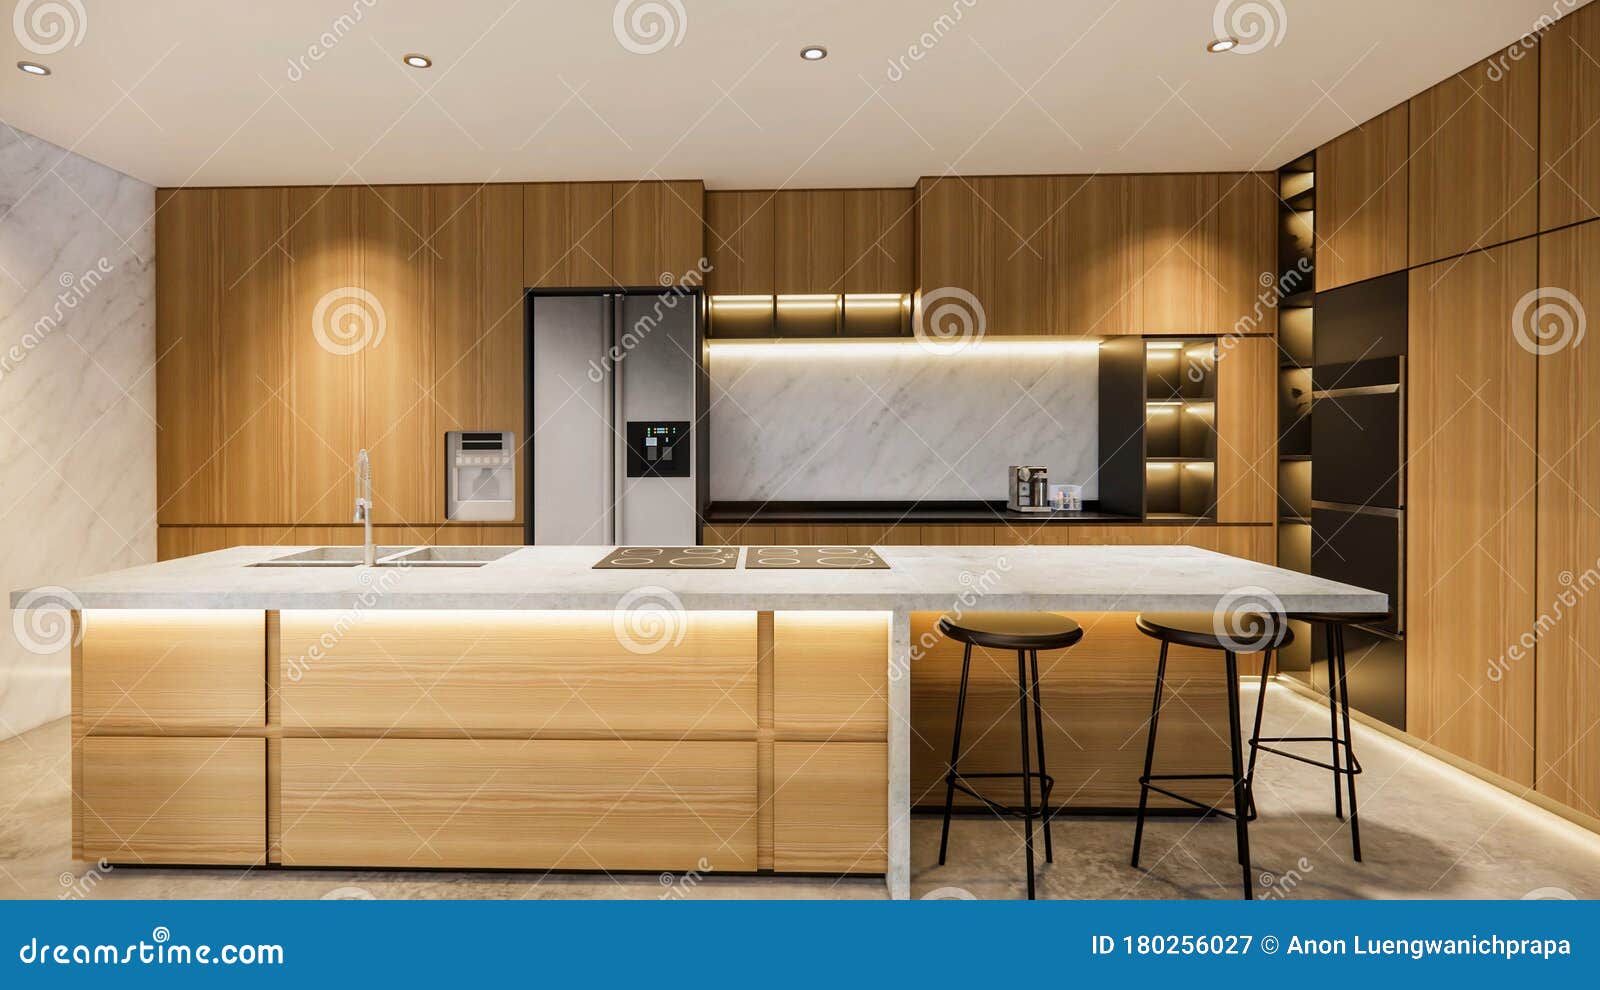 Kitchen Duplex House Interior Design - Iwish Iwas